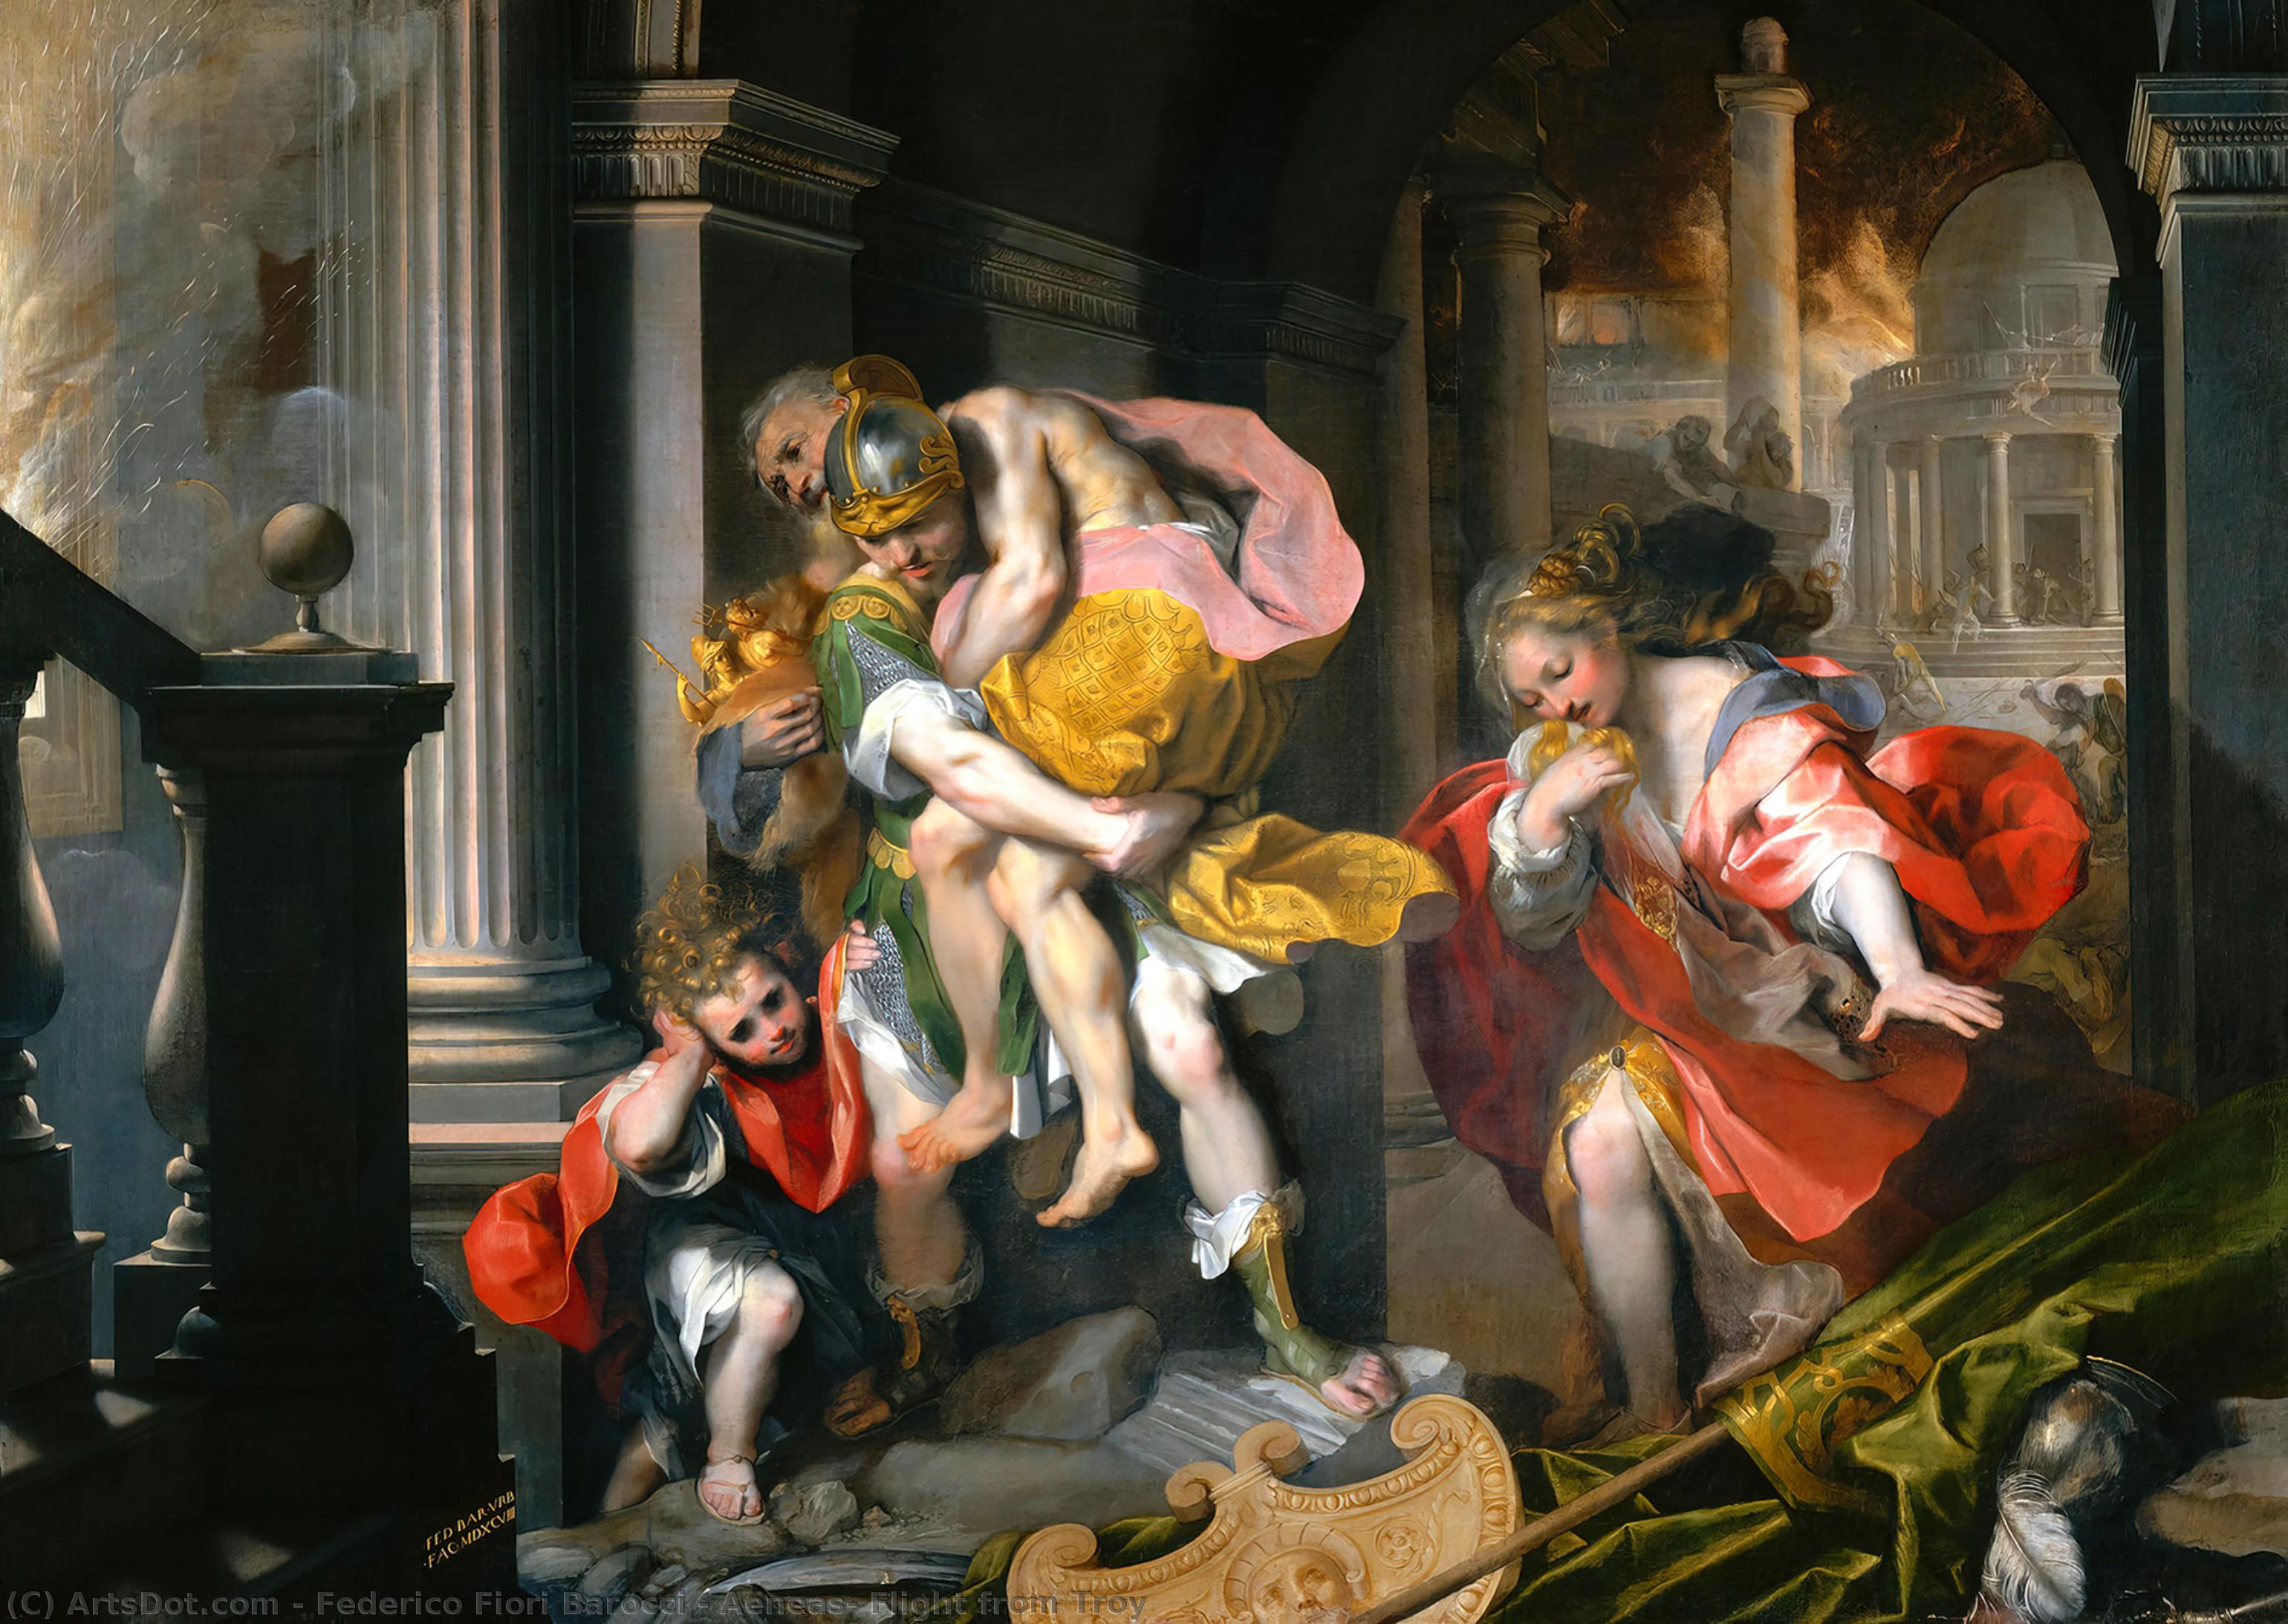 WikiOO.org - Enciklopedija dailės - Tapyba, meno kuriniai Federico Fiori Barocci - Aeneas' Flight from Troy